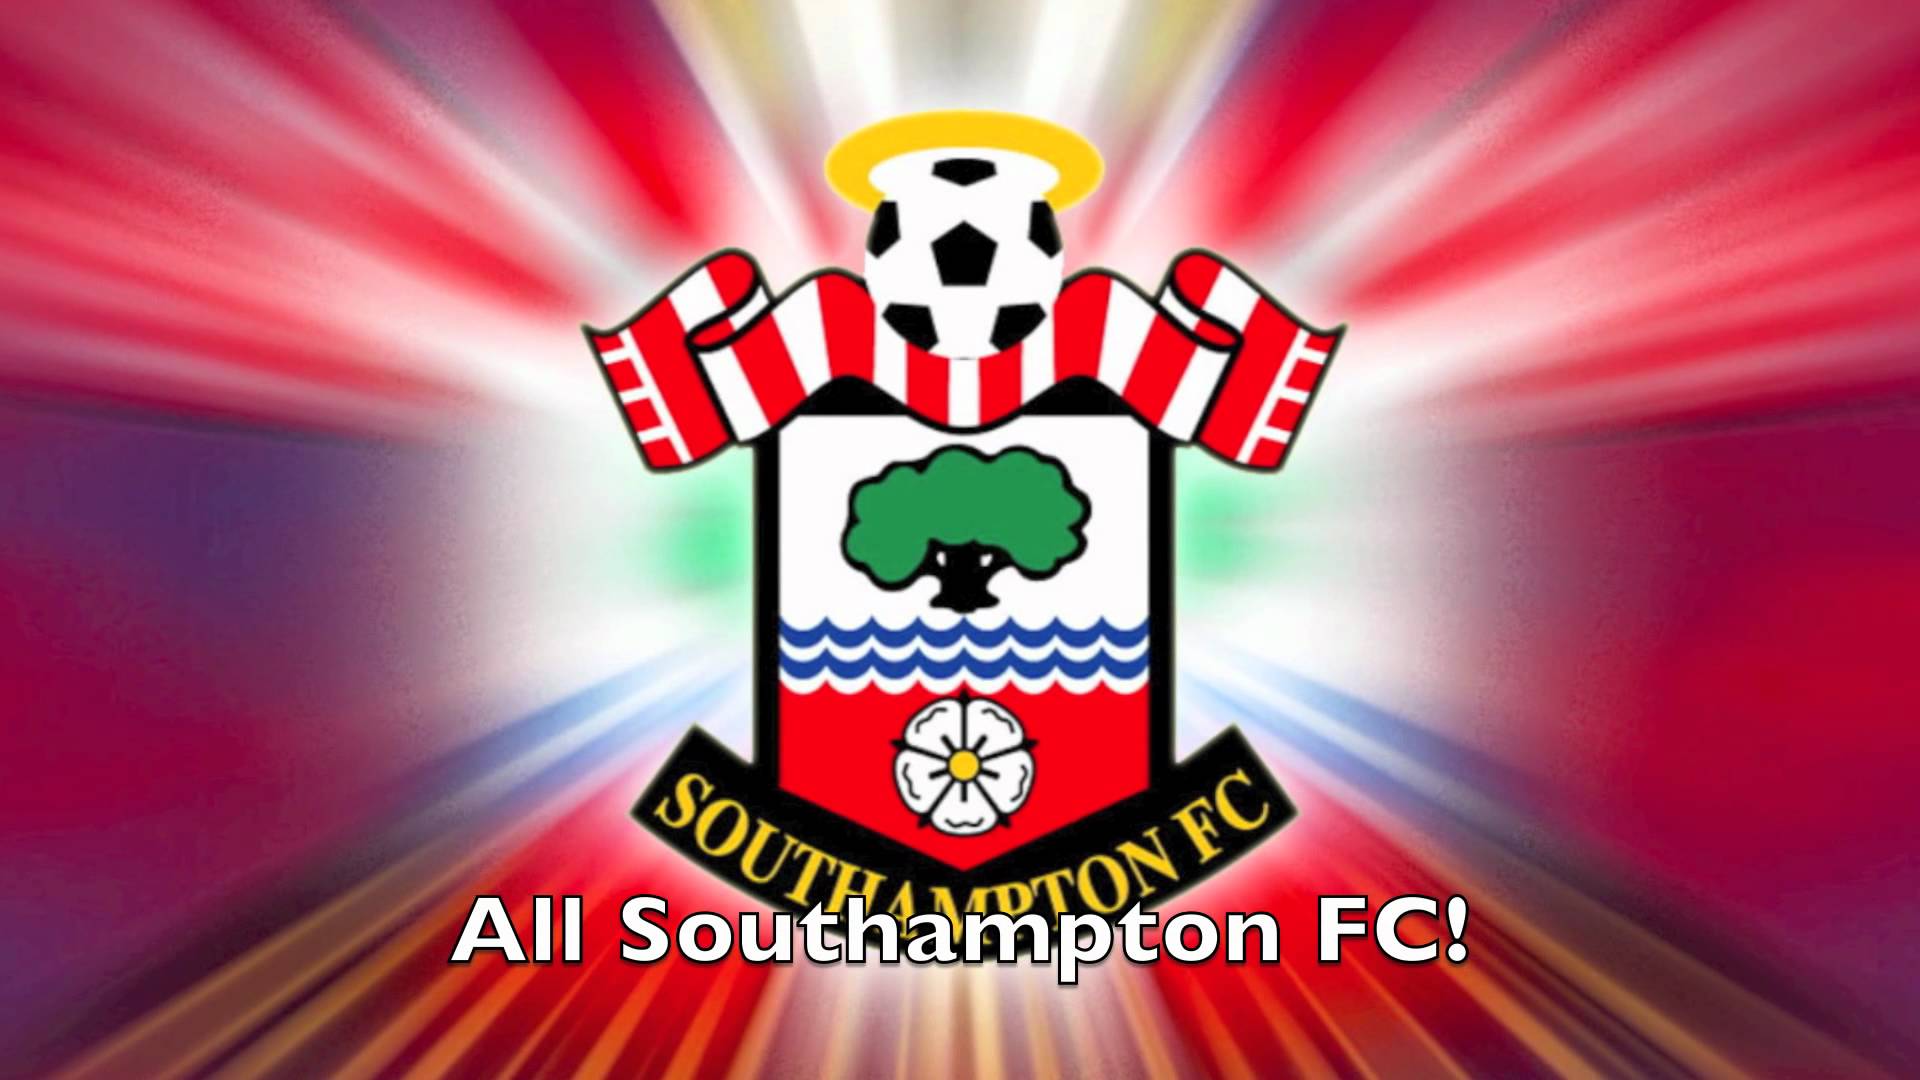 0:46 Southampton FC Chants